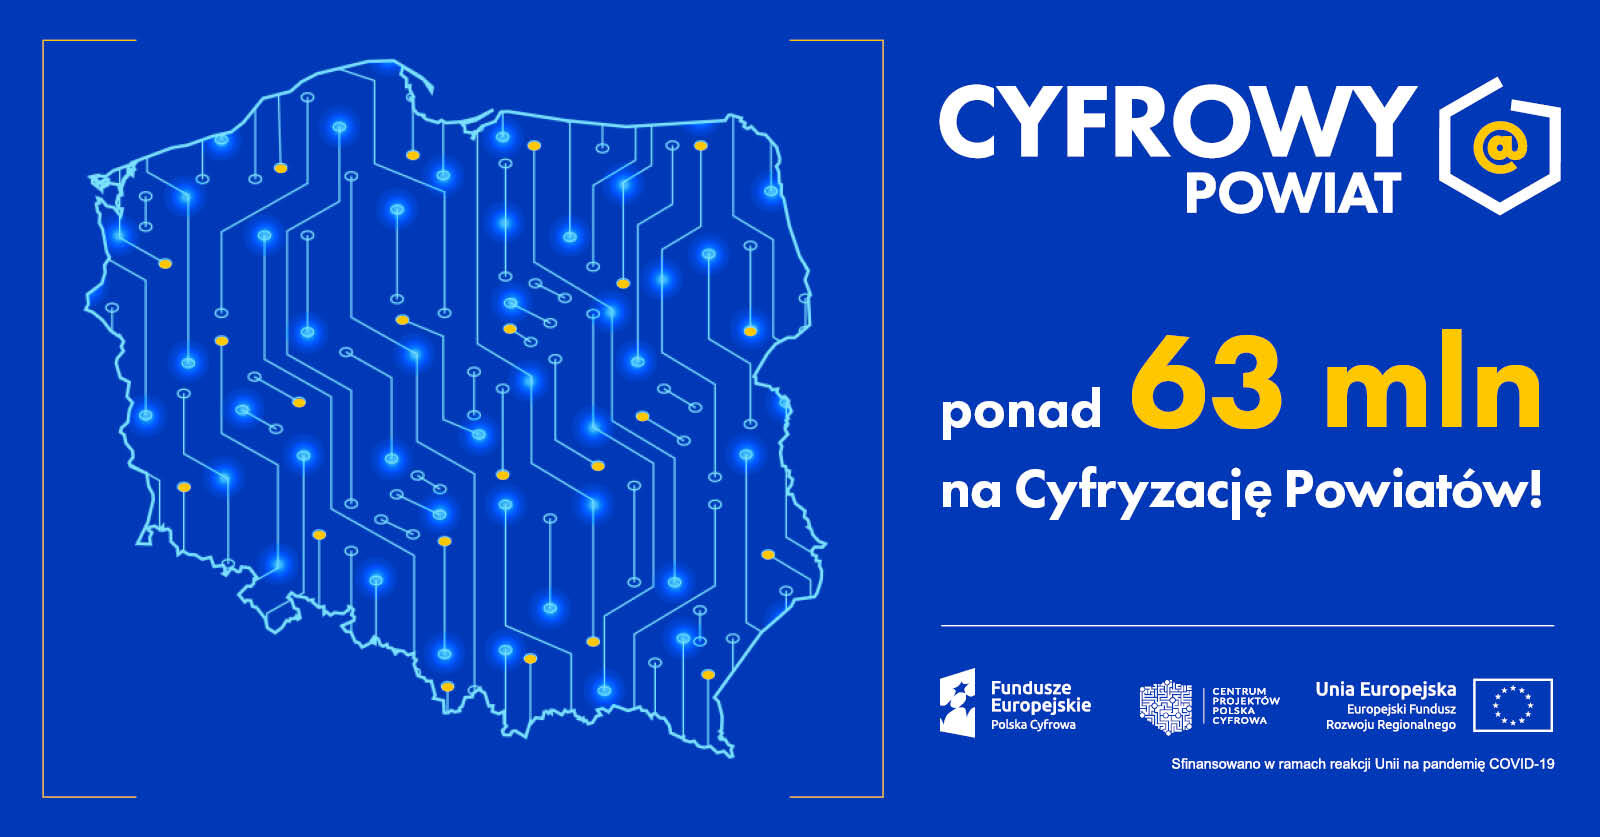 Grafika promocyjna z konturem Polski, ikonami technologii, napis "CYFROWY POWIAT" oraz informacją o dofinansowaniu 63 mln zł na cyfryzację z funduszy UE.